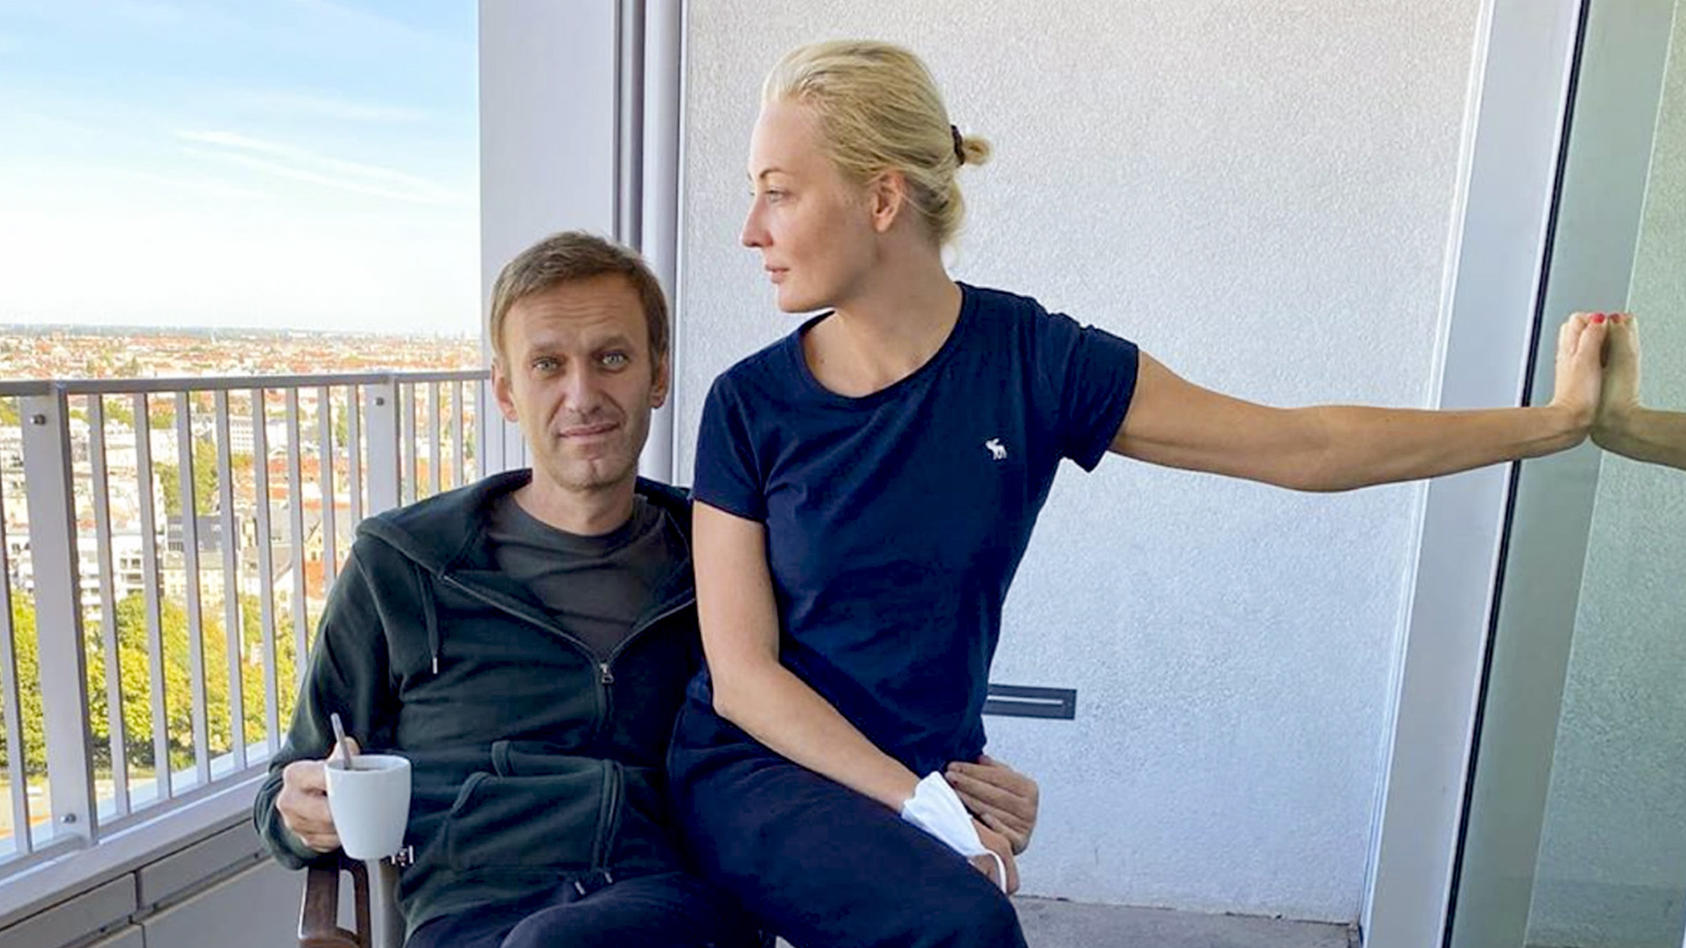 ARCHIV - 21.09.2020, Berlin: HANDOUT - Das Foto zeigt Alexej Nawalny und seine Frau Julia, das der russische Oppositionsführer am Montag, den 21. September 2020 bei Instagram veröffentlicht hat. Nach 32-tägiger Behandlung ist der vergiftete russische